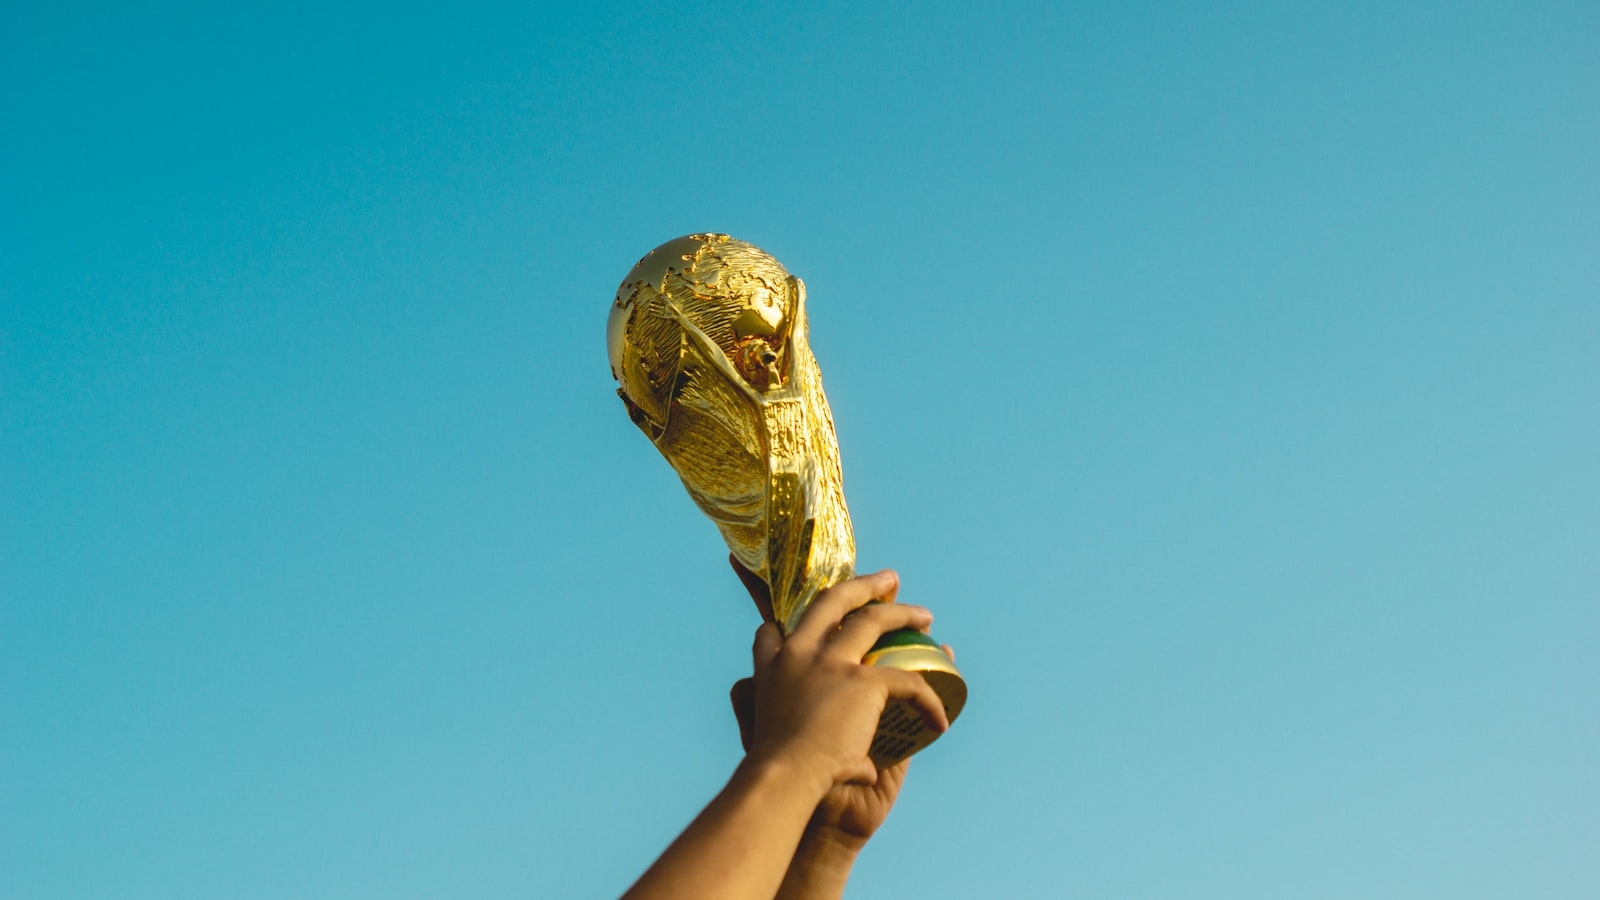 World Cup: Mời gọi cầu thay cho Qatar